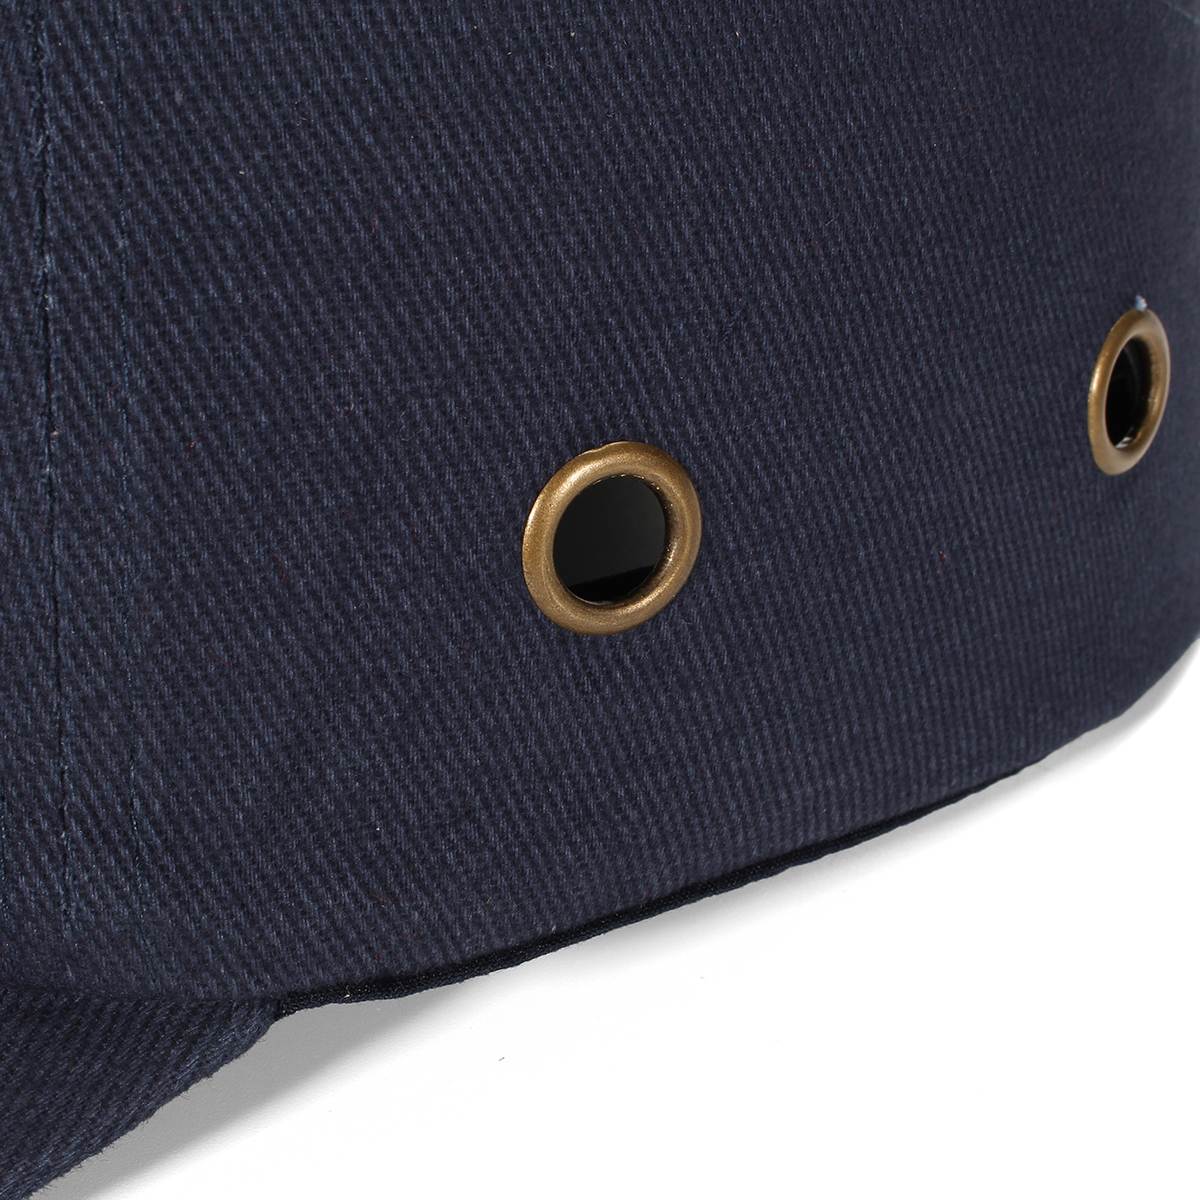 ANPWOO-gorras de béisbol con protección para la cabeza, casco de seguridad ligero, color azul